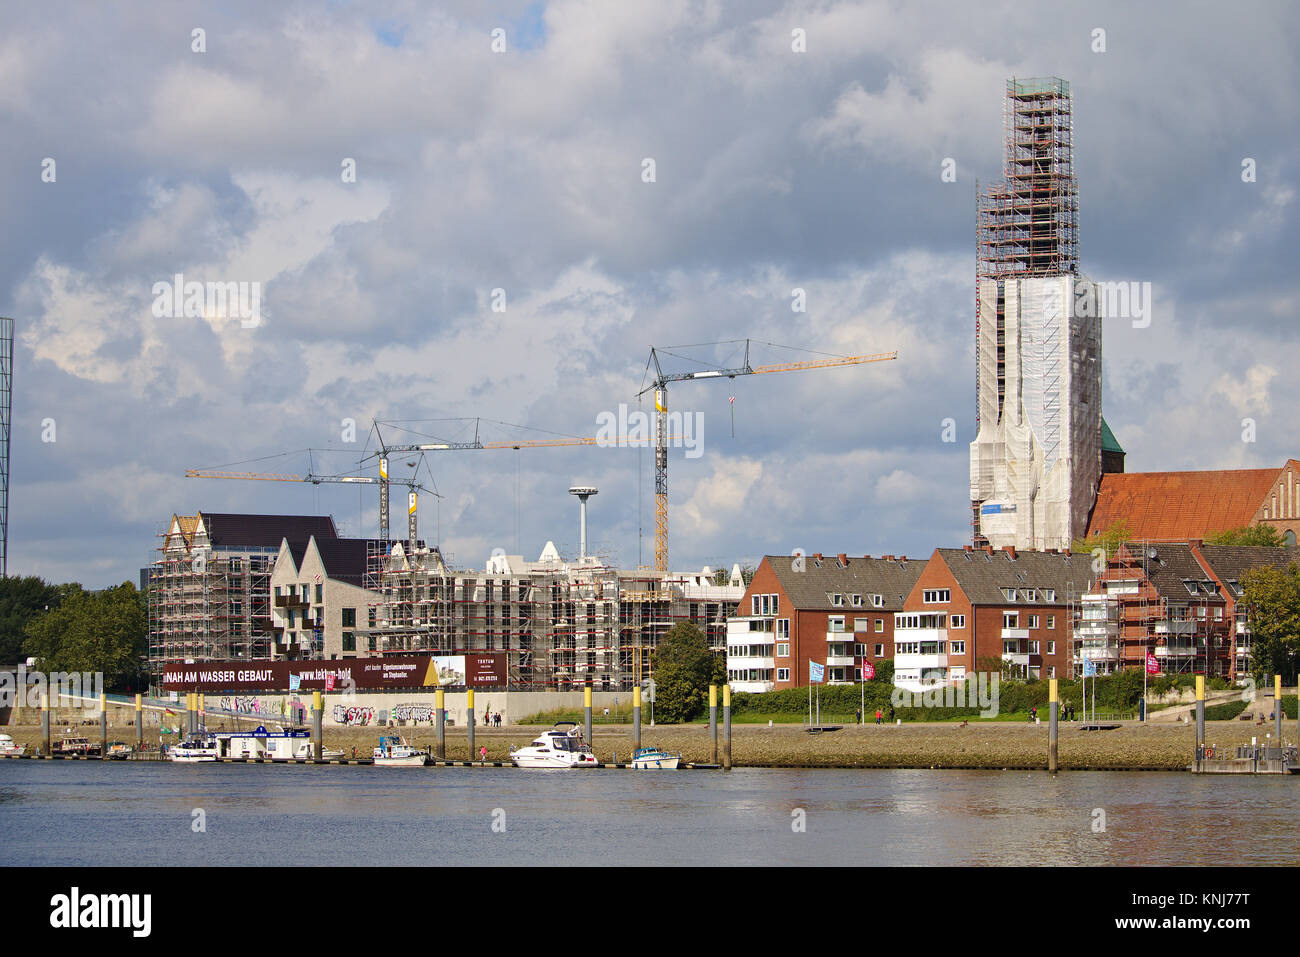 Bremen, Germania - Settembre 14th, 2017 - Riverside sito in costruzione di gru, ponteggi parzialmente e completamente completata edifici residenziali, chiesa Foto Stock